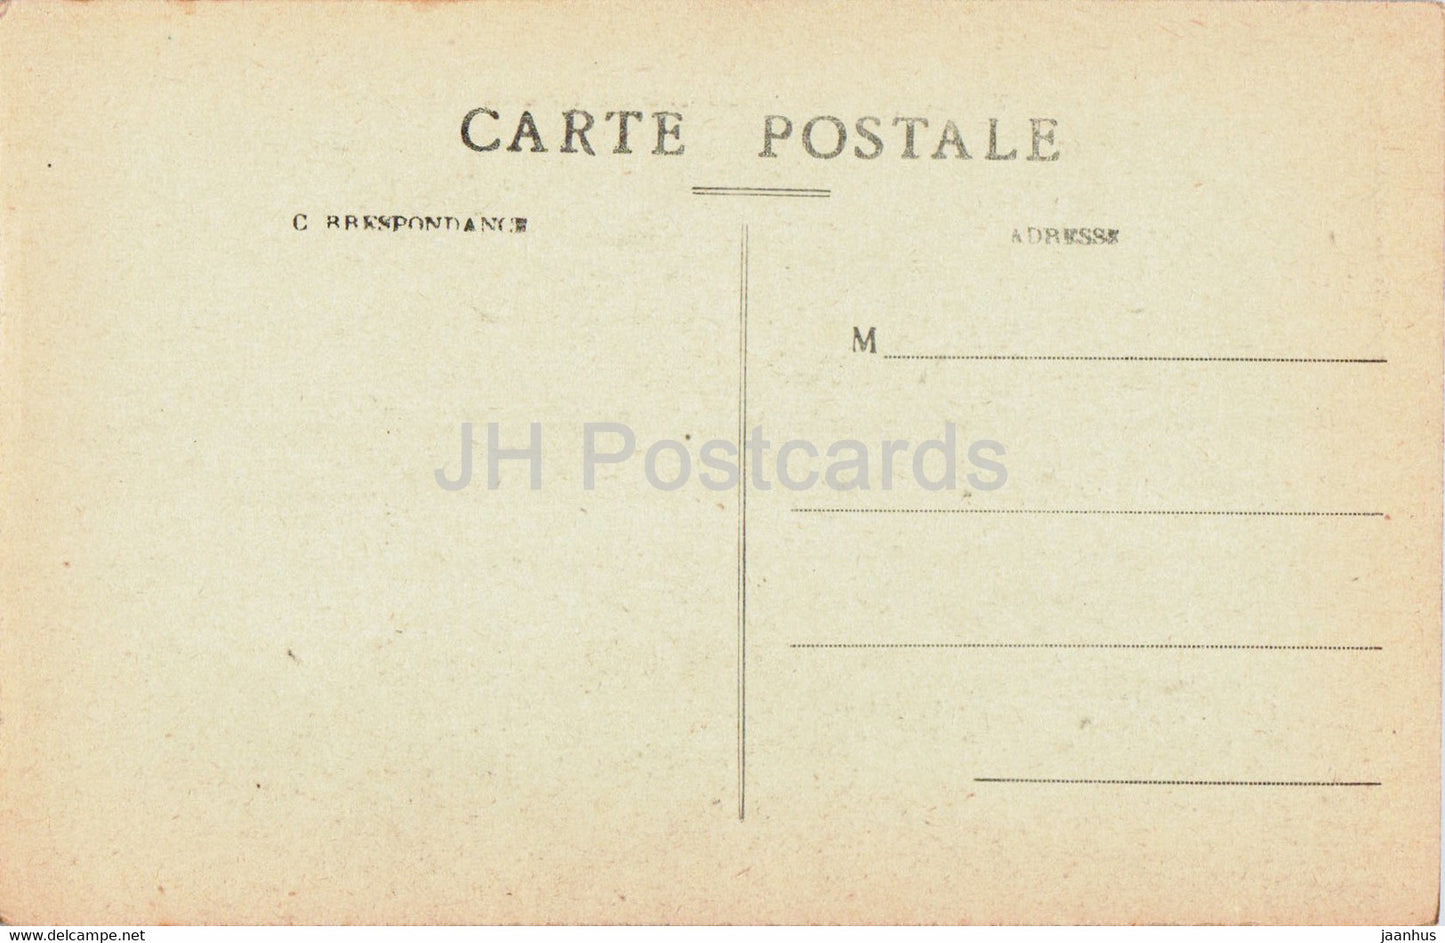 Le Plomb du Cantal - Nos Montagnes - 1831 - carte postale ancienne - France - inutilisée